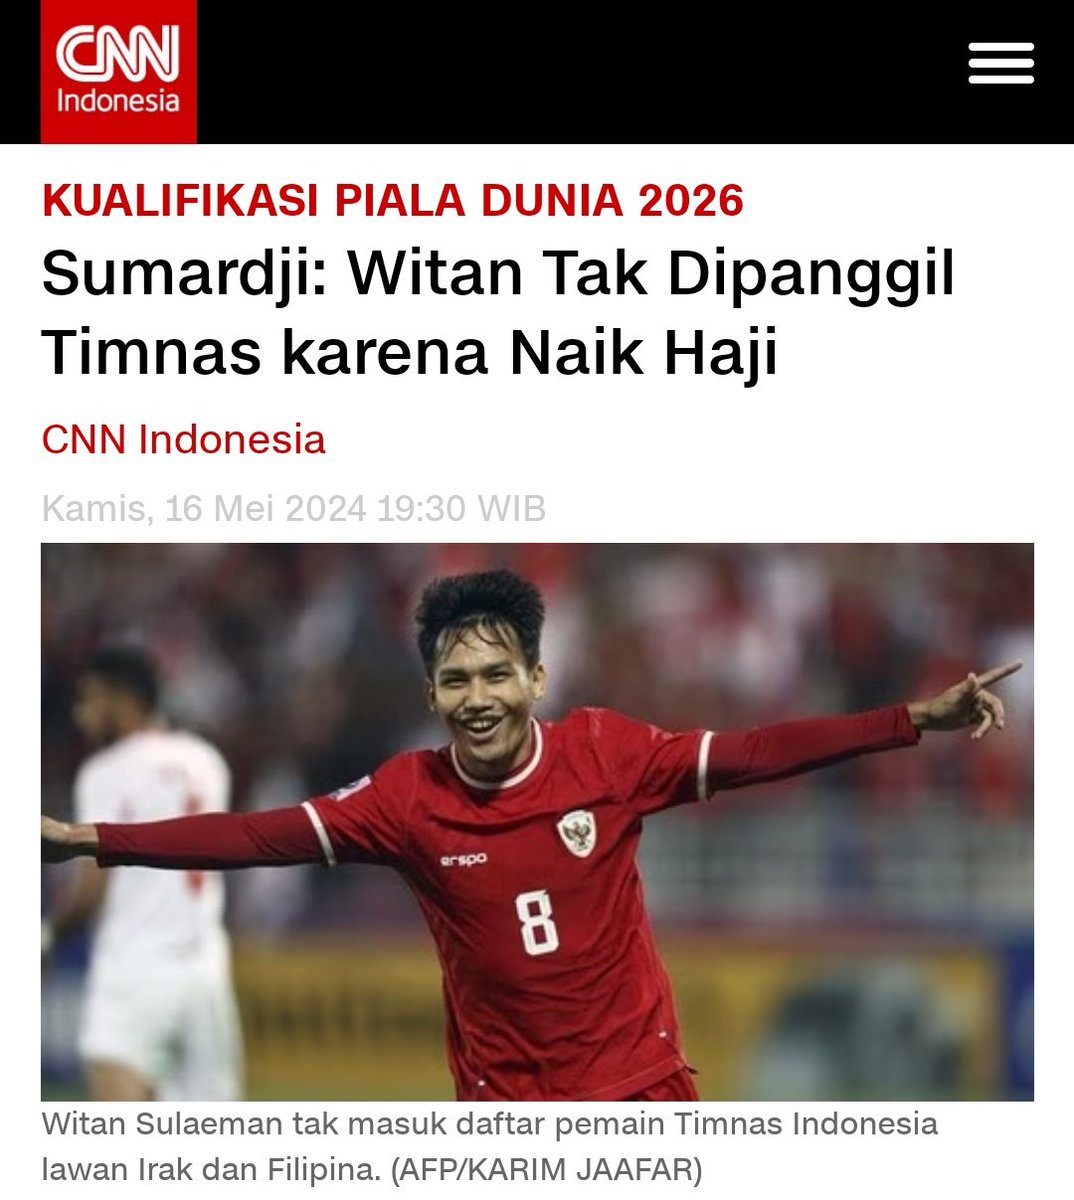 Witan Sulaeman tidak dipanggil timnas Indonesia untuk pertandingan melawan Irak & Filipina karena akan menjalankan ibadah Haji. #timnas